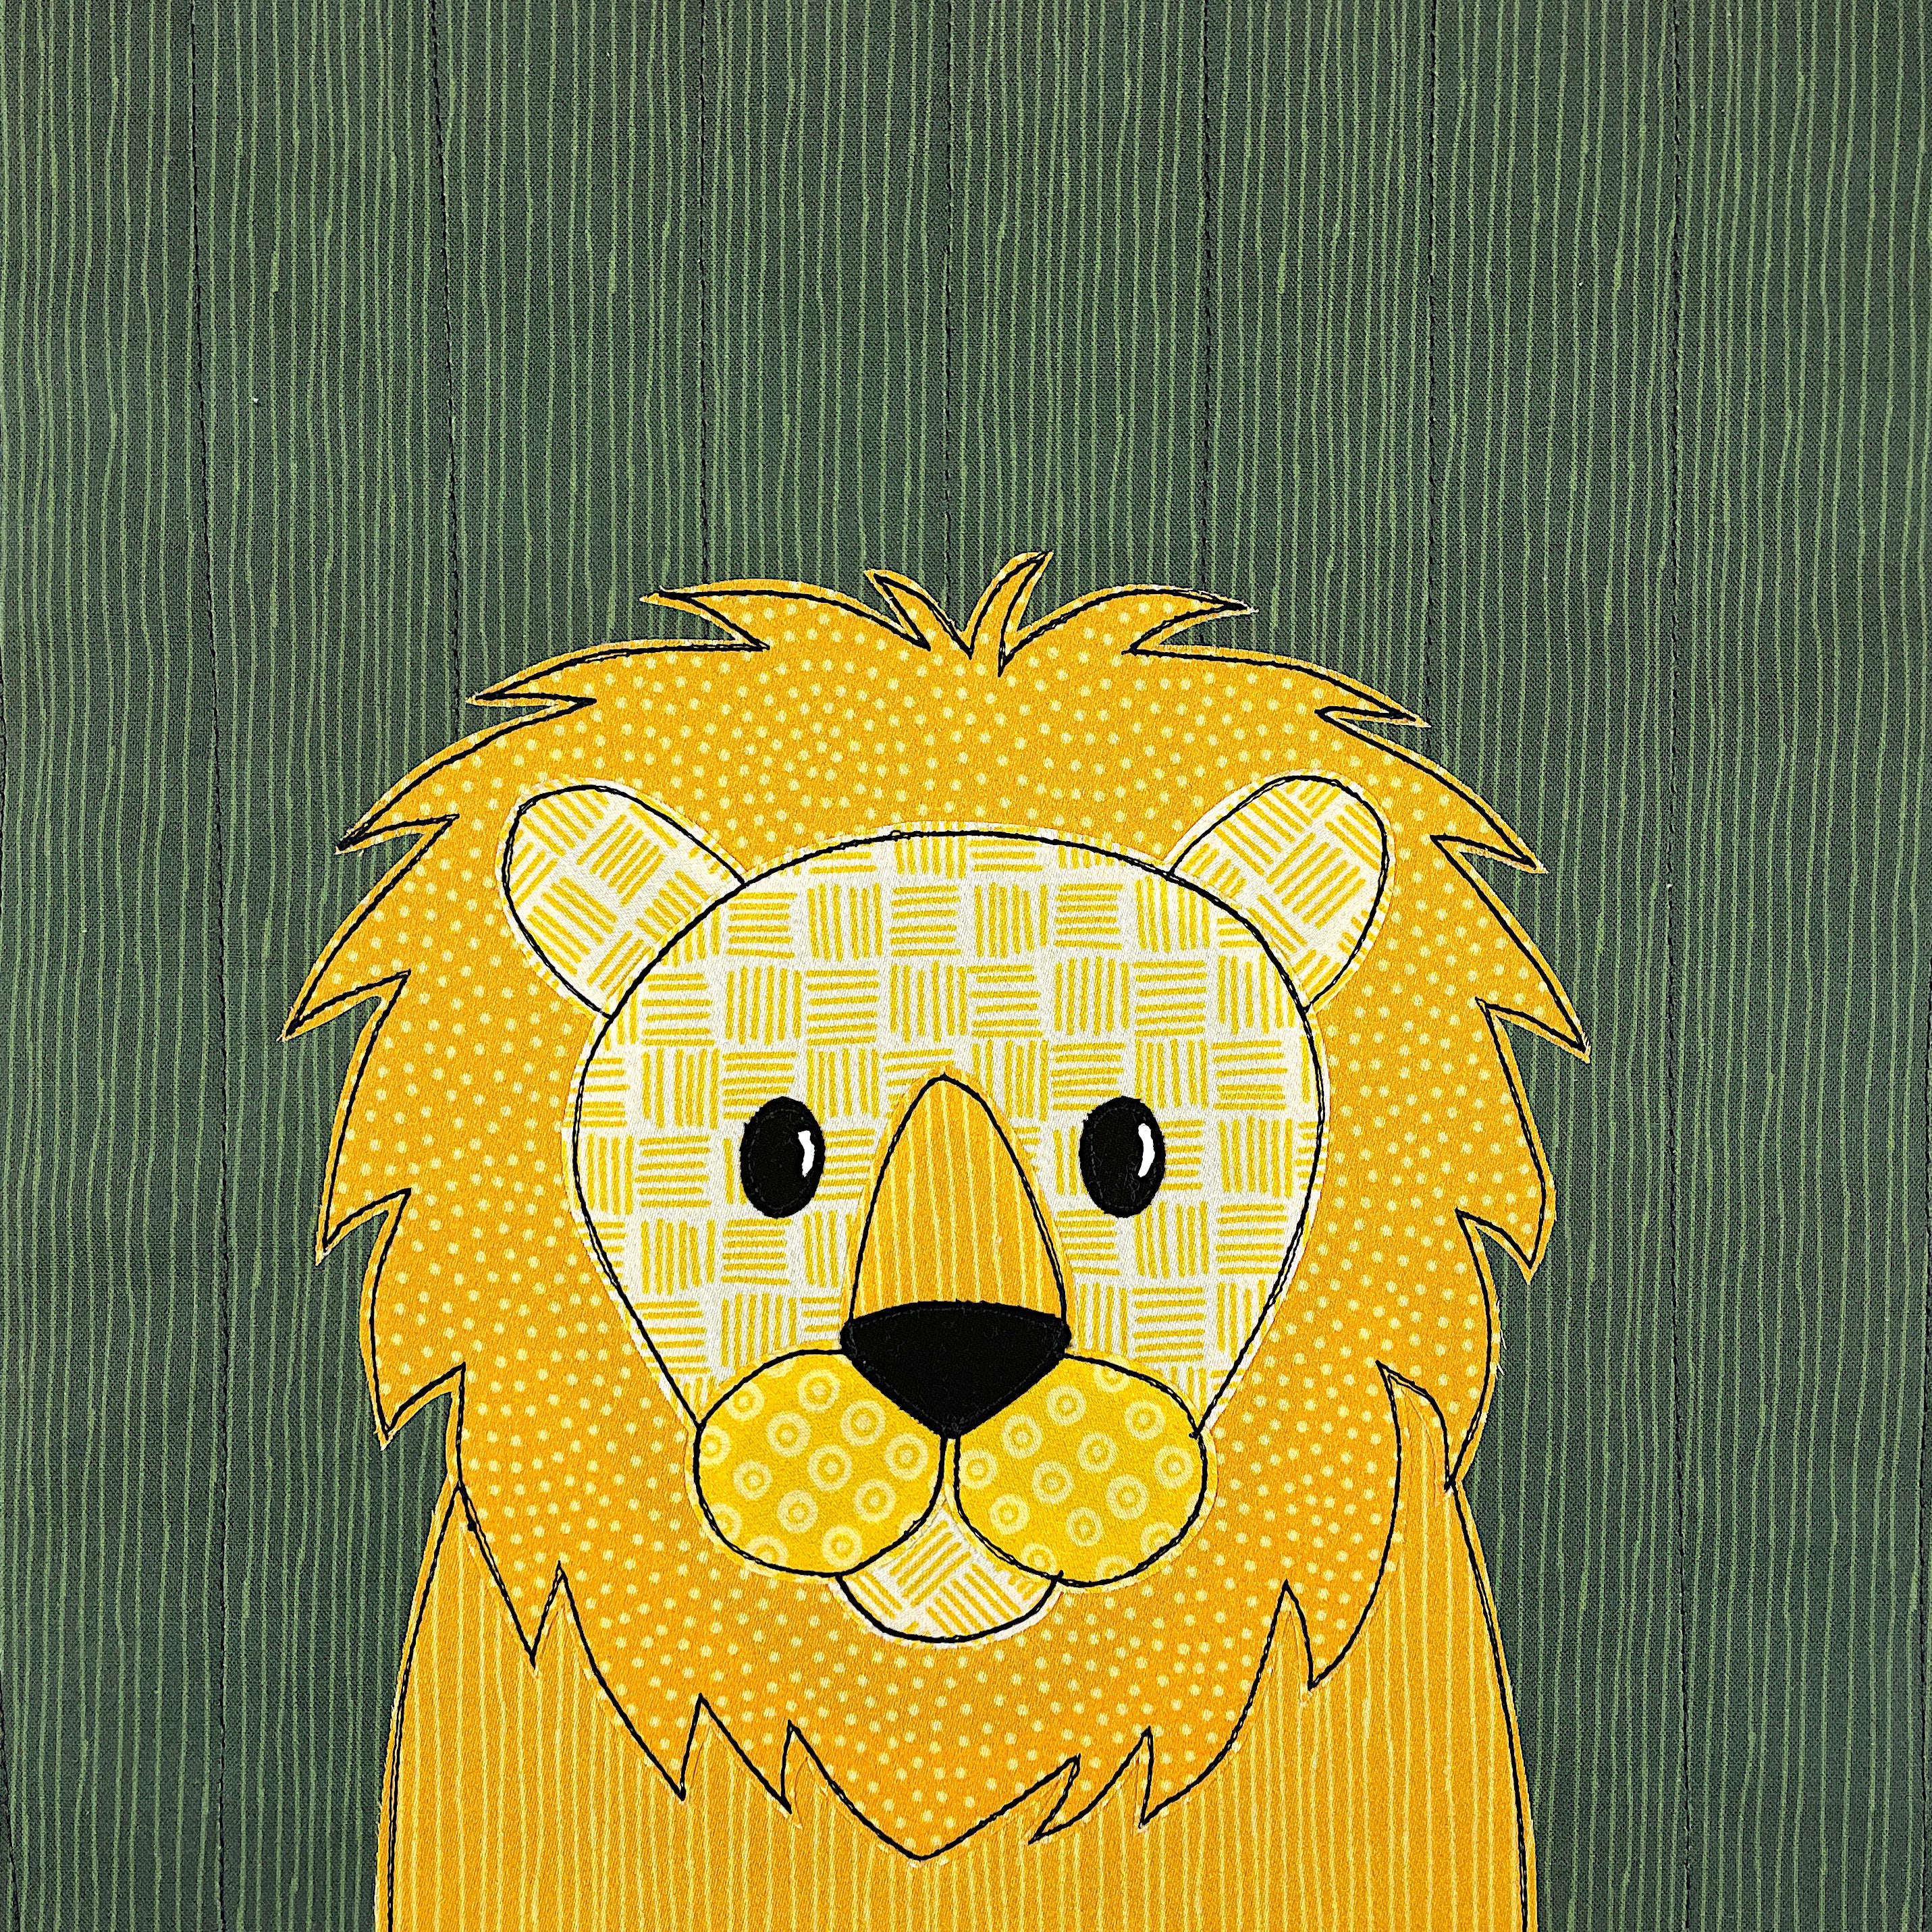 Lucien Lion Applique Pattern